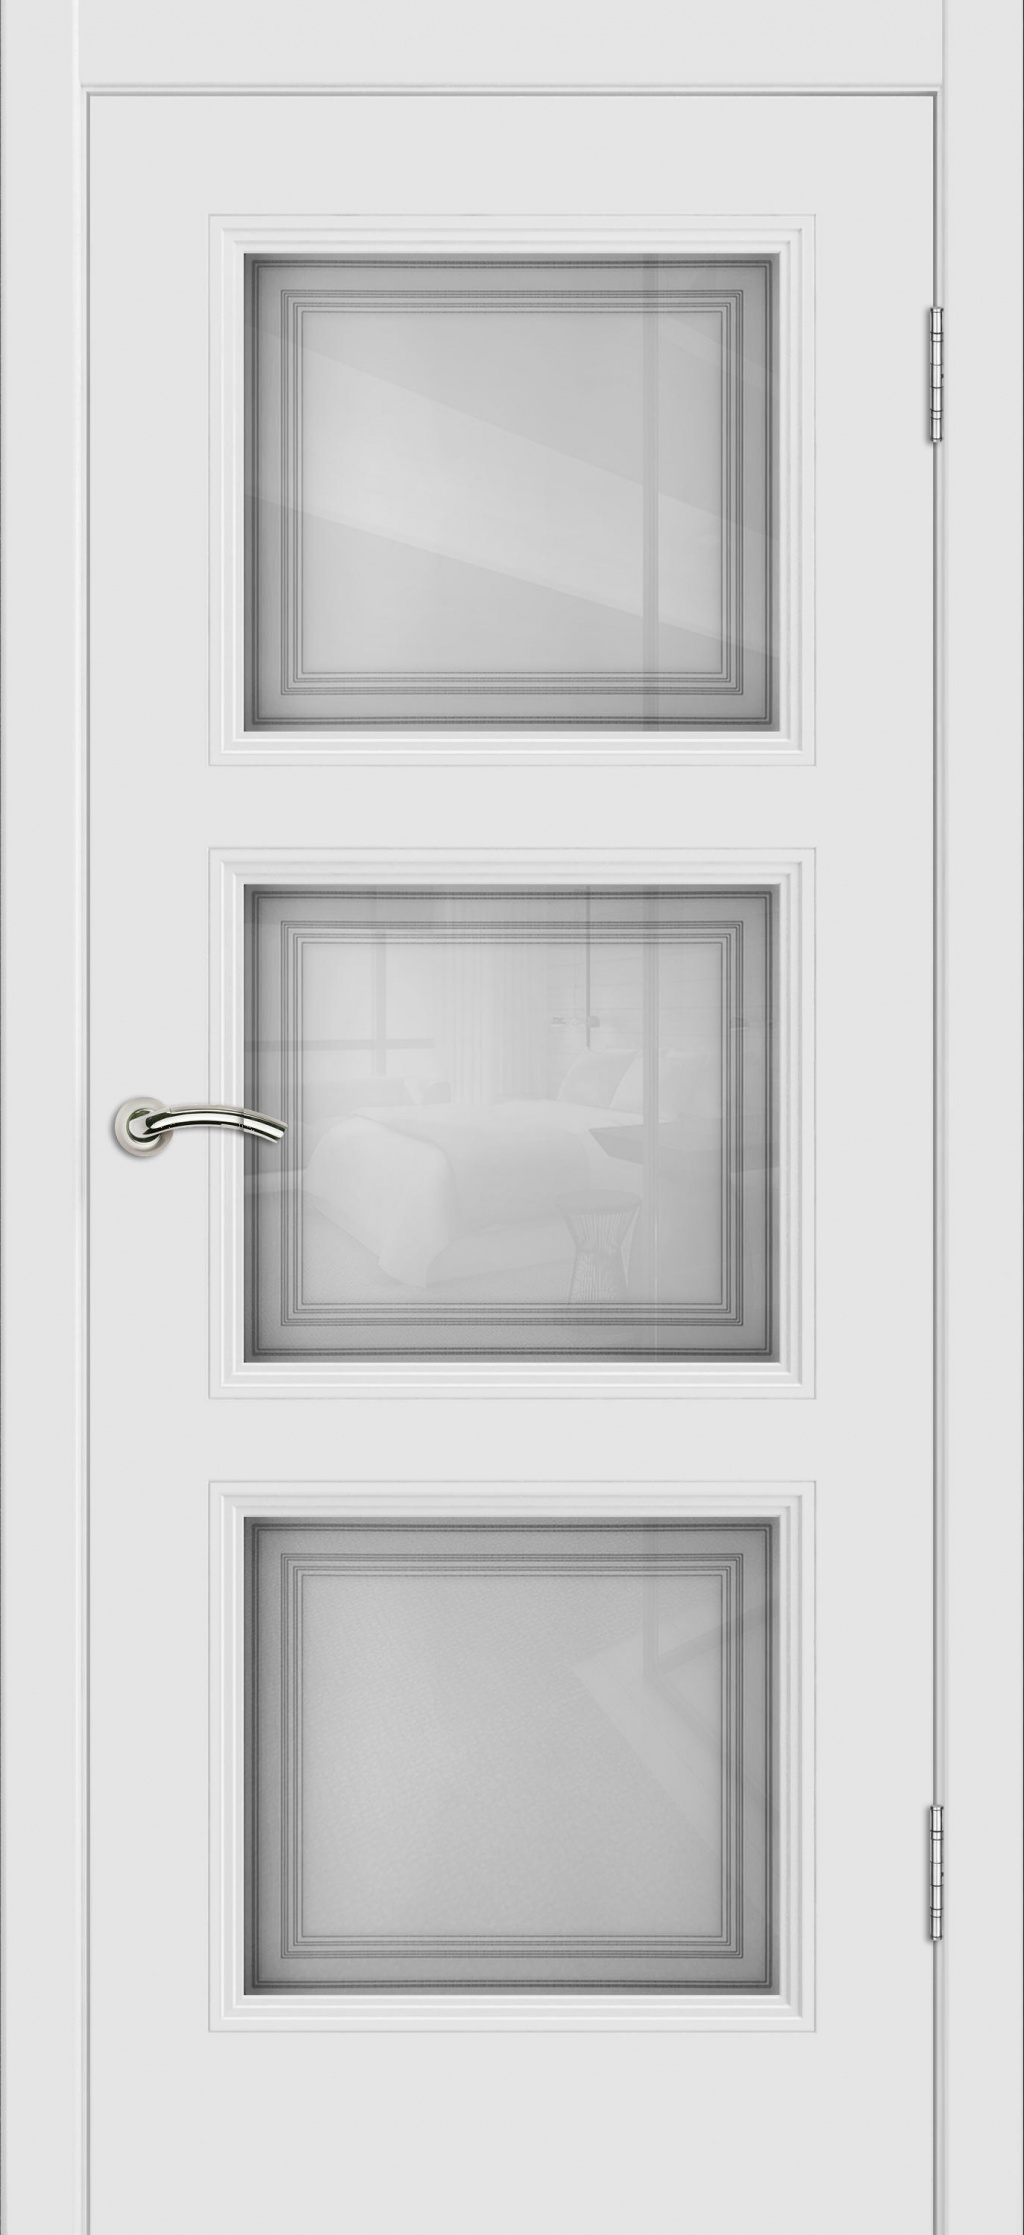 Cordondoor Межкомнатная дверь Vision 3 ПО Узор 1-3, арт. 19311 - фото №2